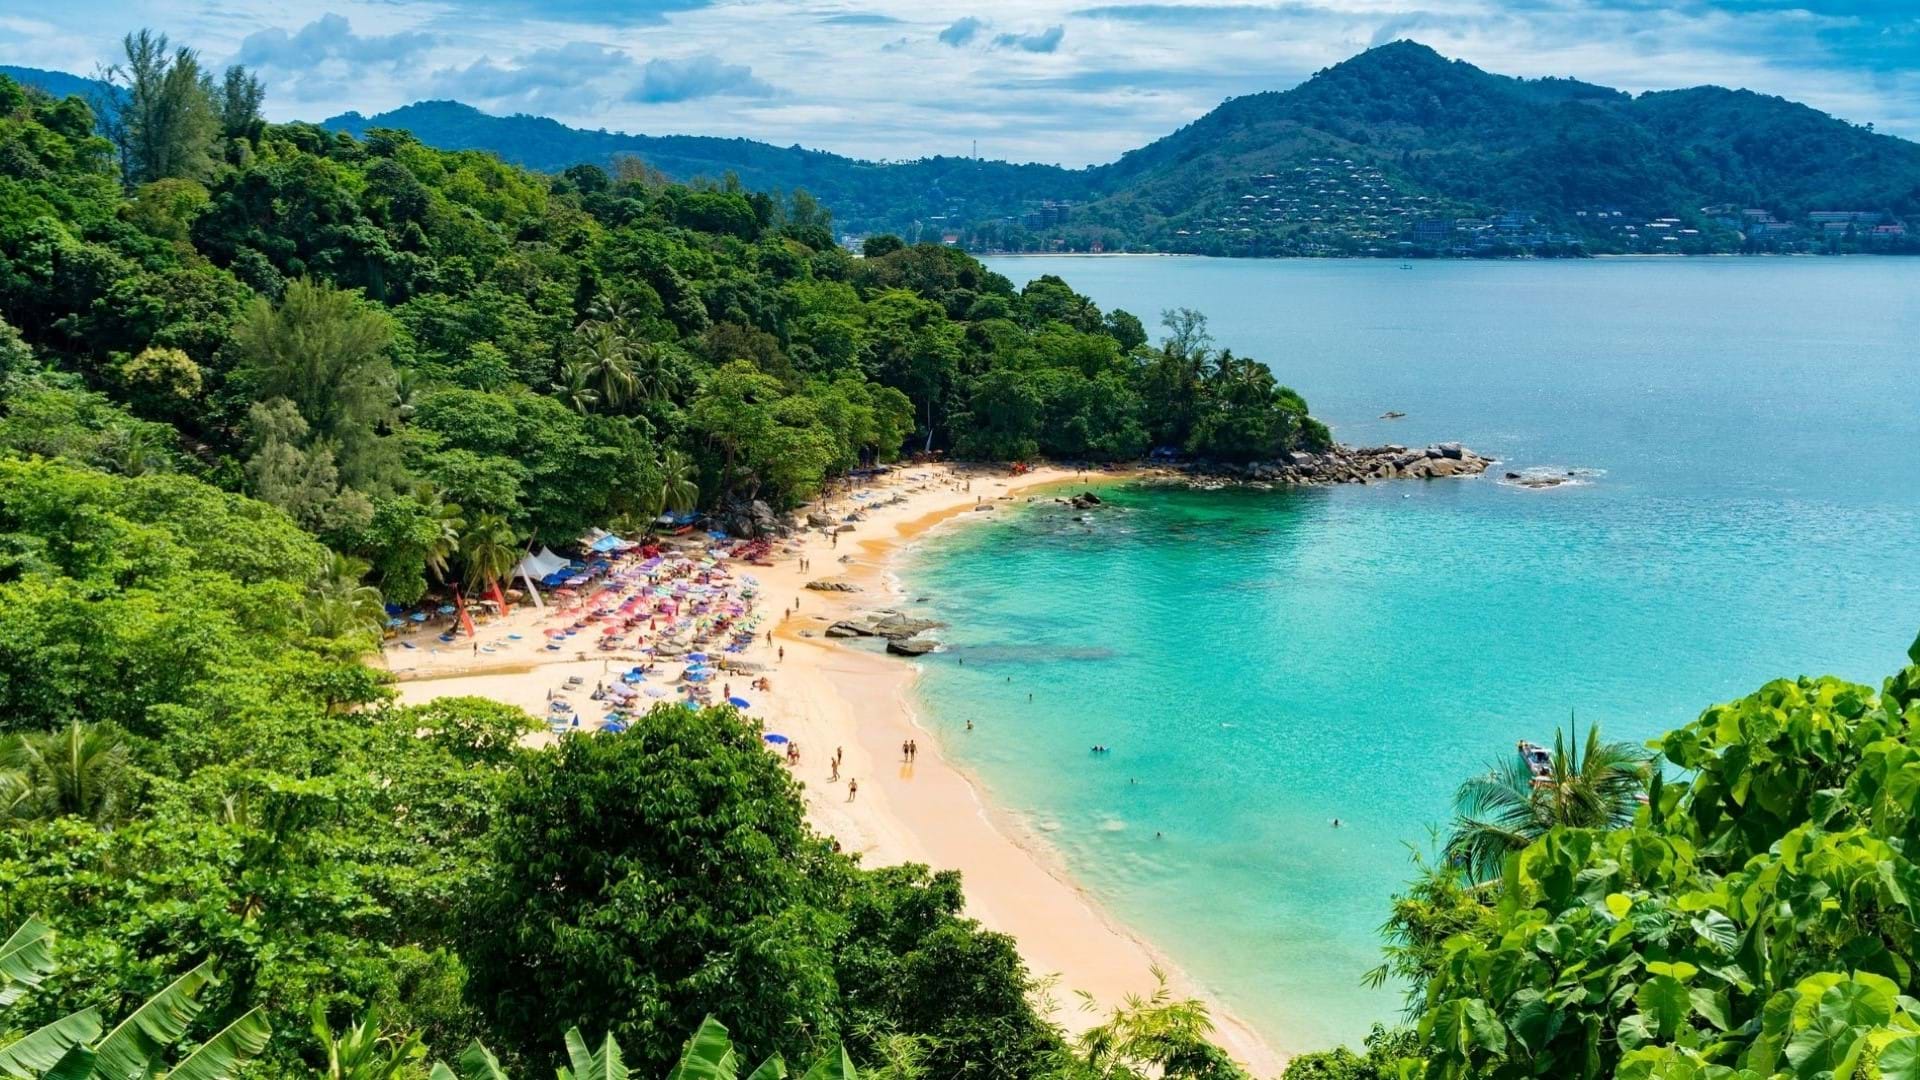 Prelepa plaža na Tajlandu. Ostvro puket, predivna obala, plaža sa sitnim peskom i džunla koja je okružuje.